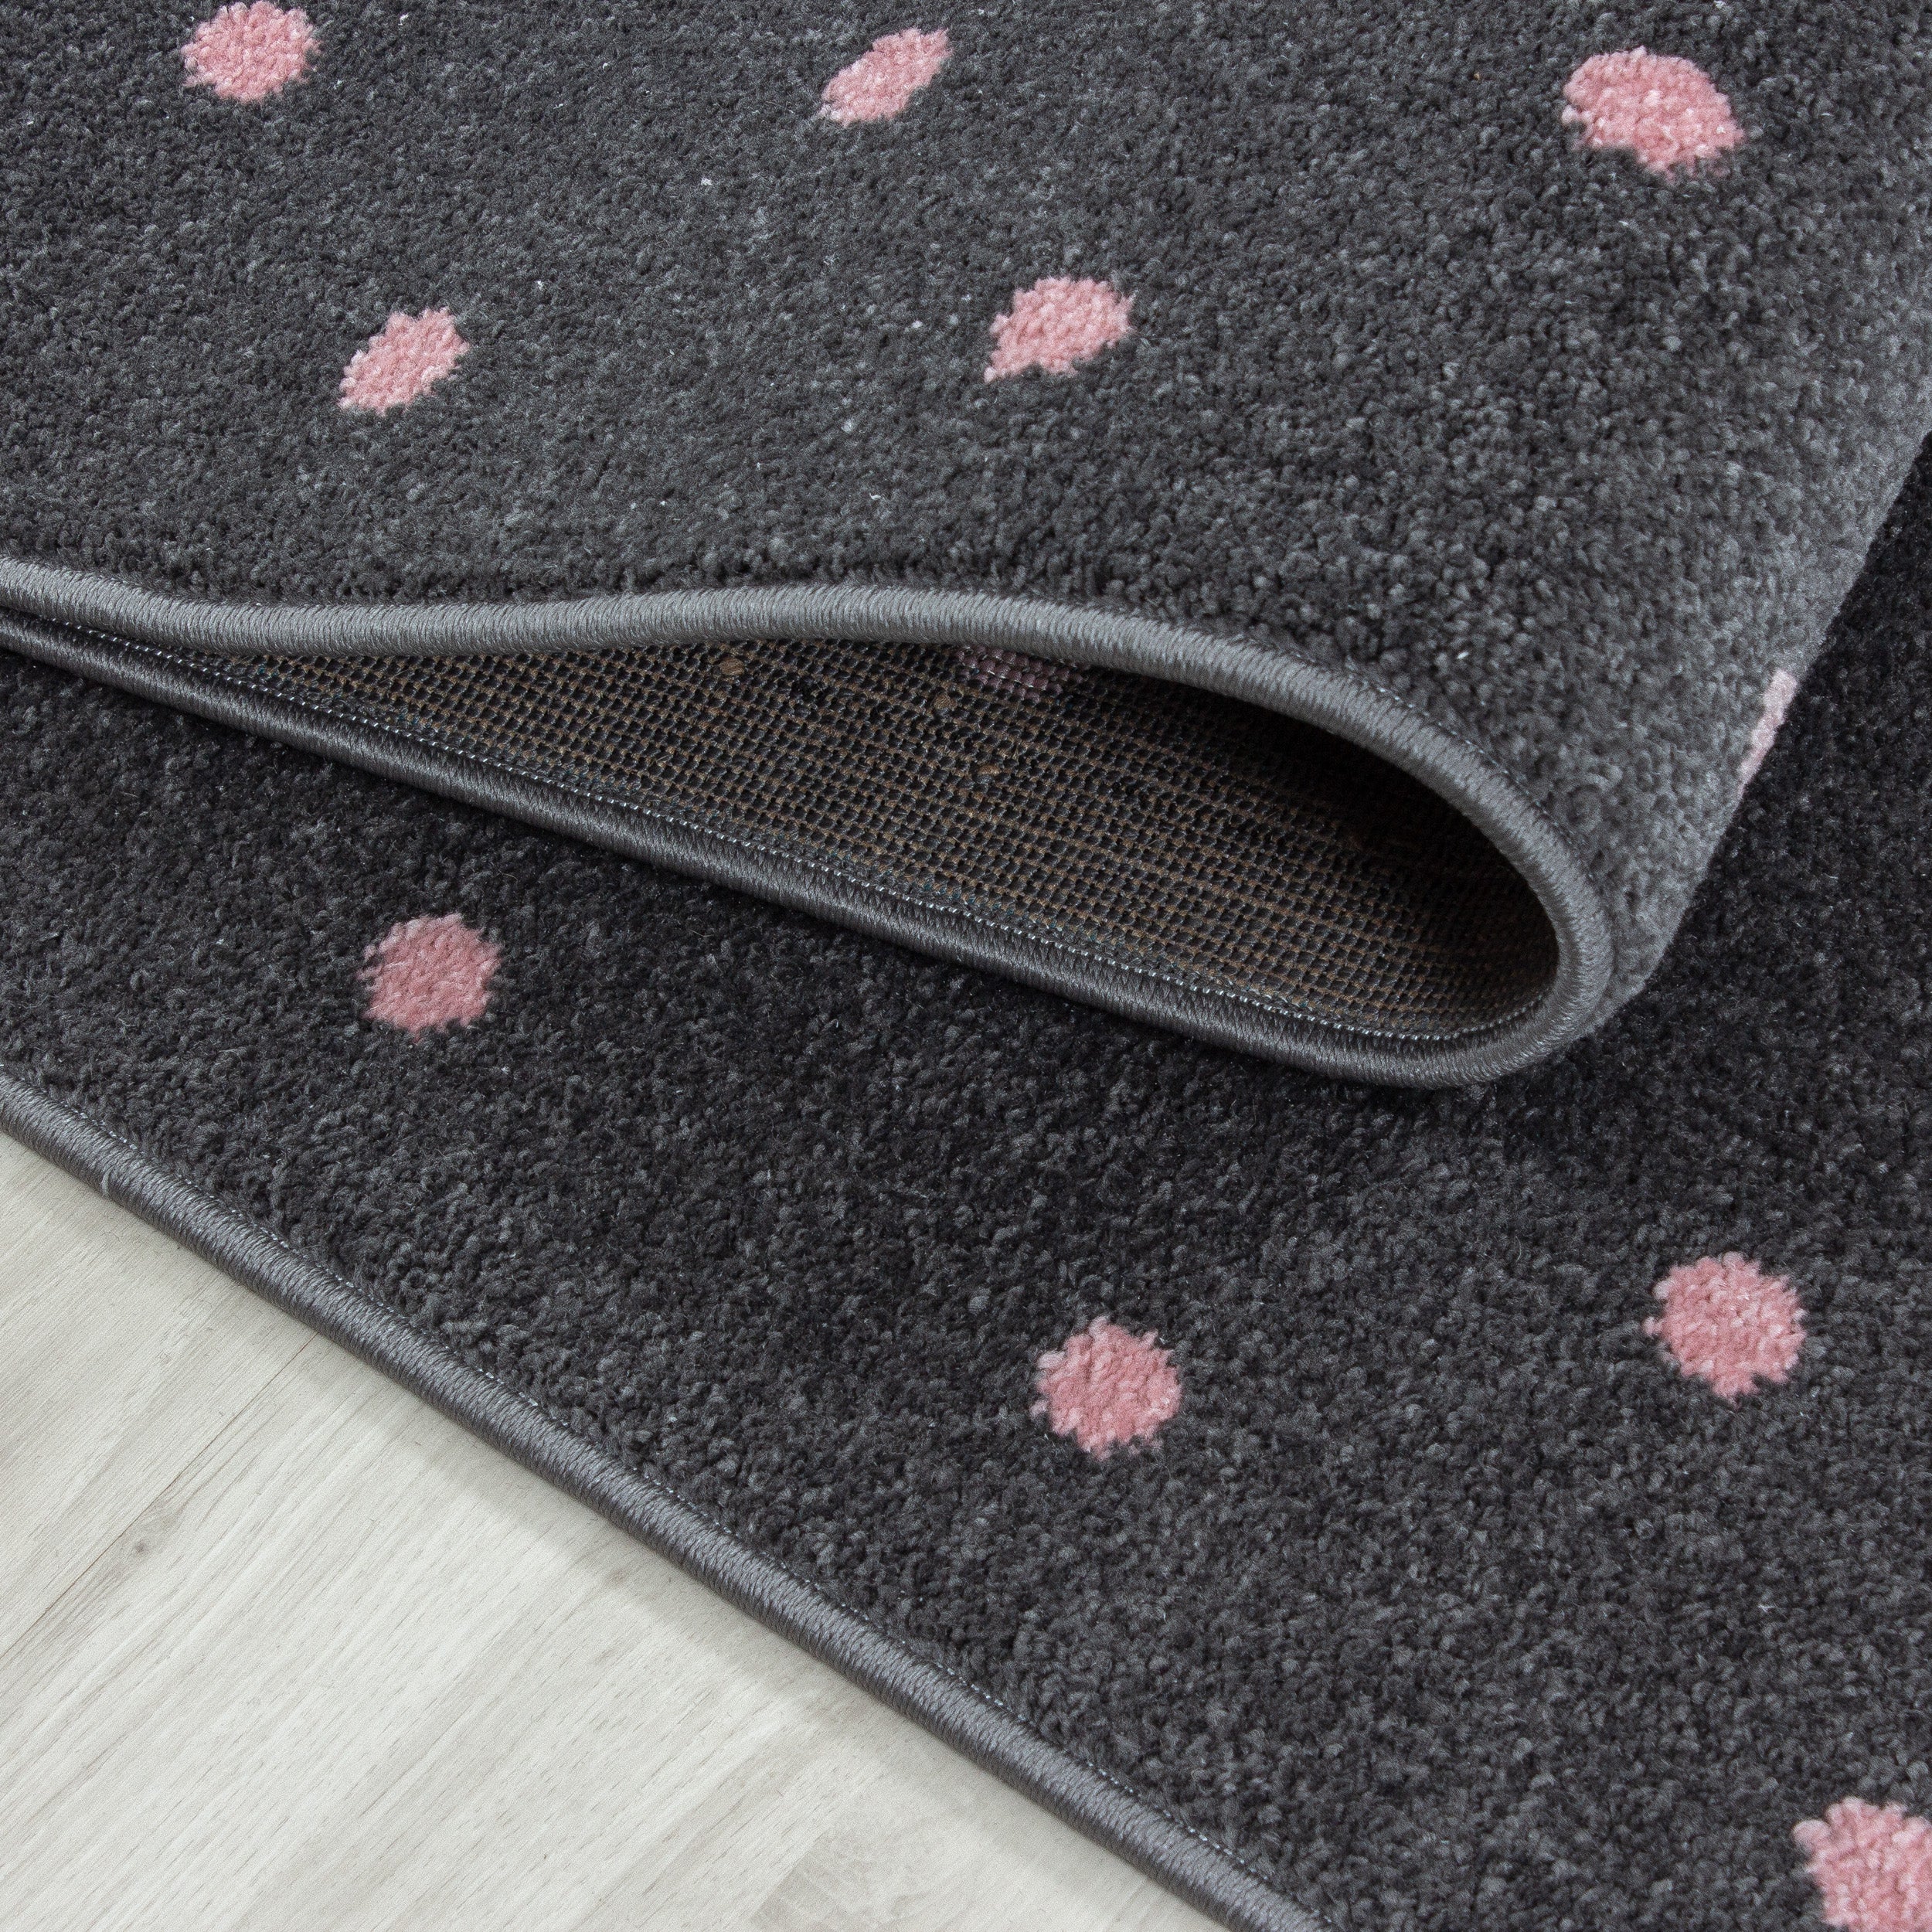 Kurzflor Kinderteppich Herz Design Soft Wohnteppich Kinderzimmer Farbe Grau Pink